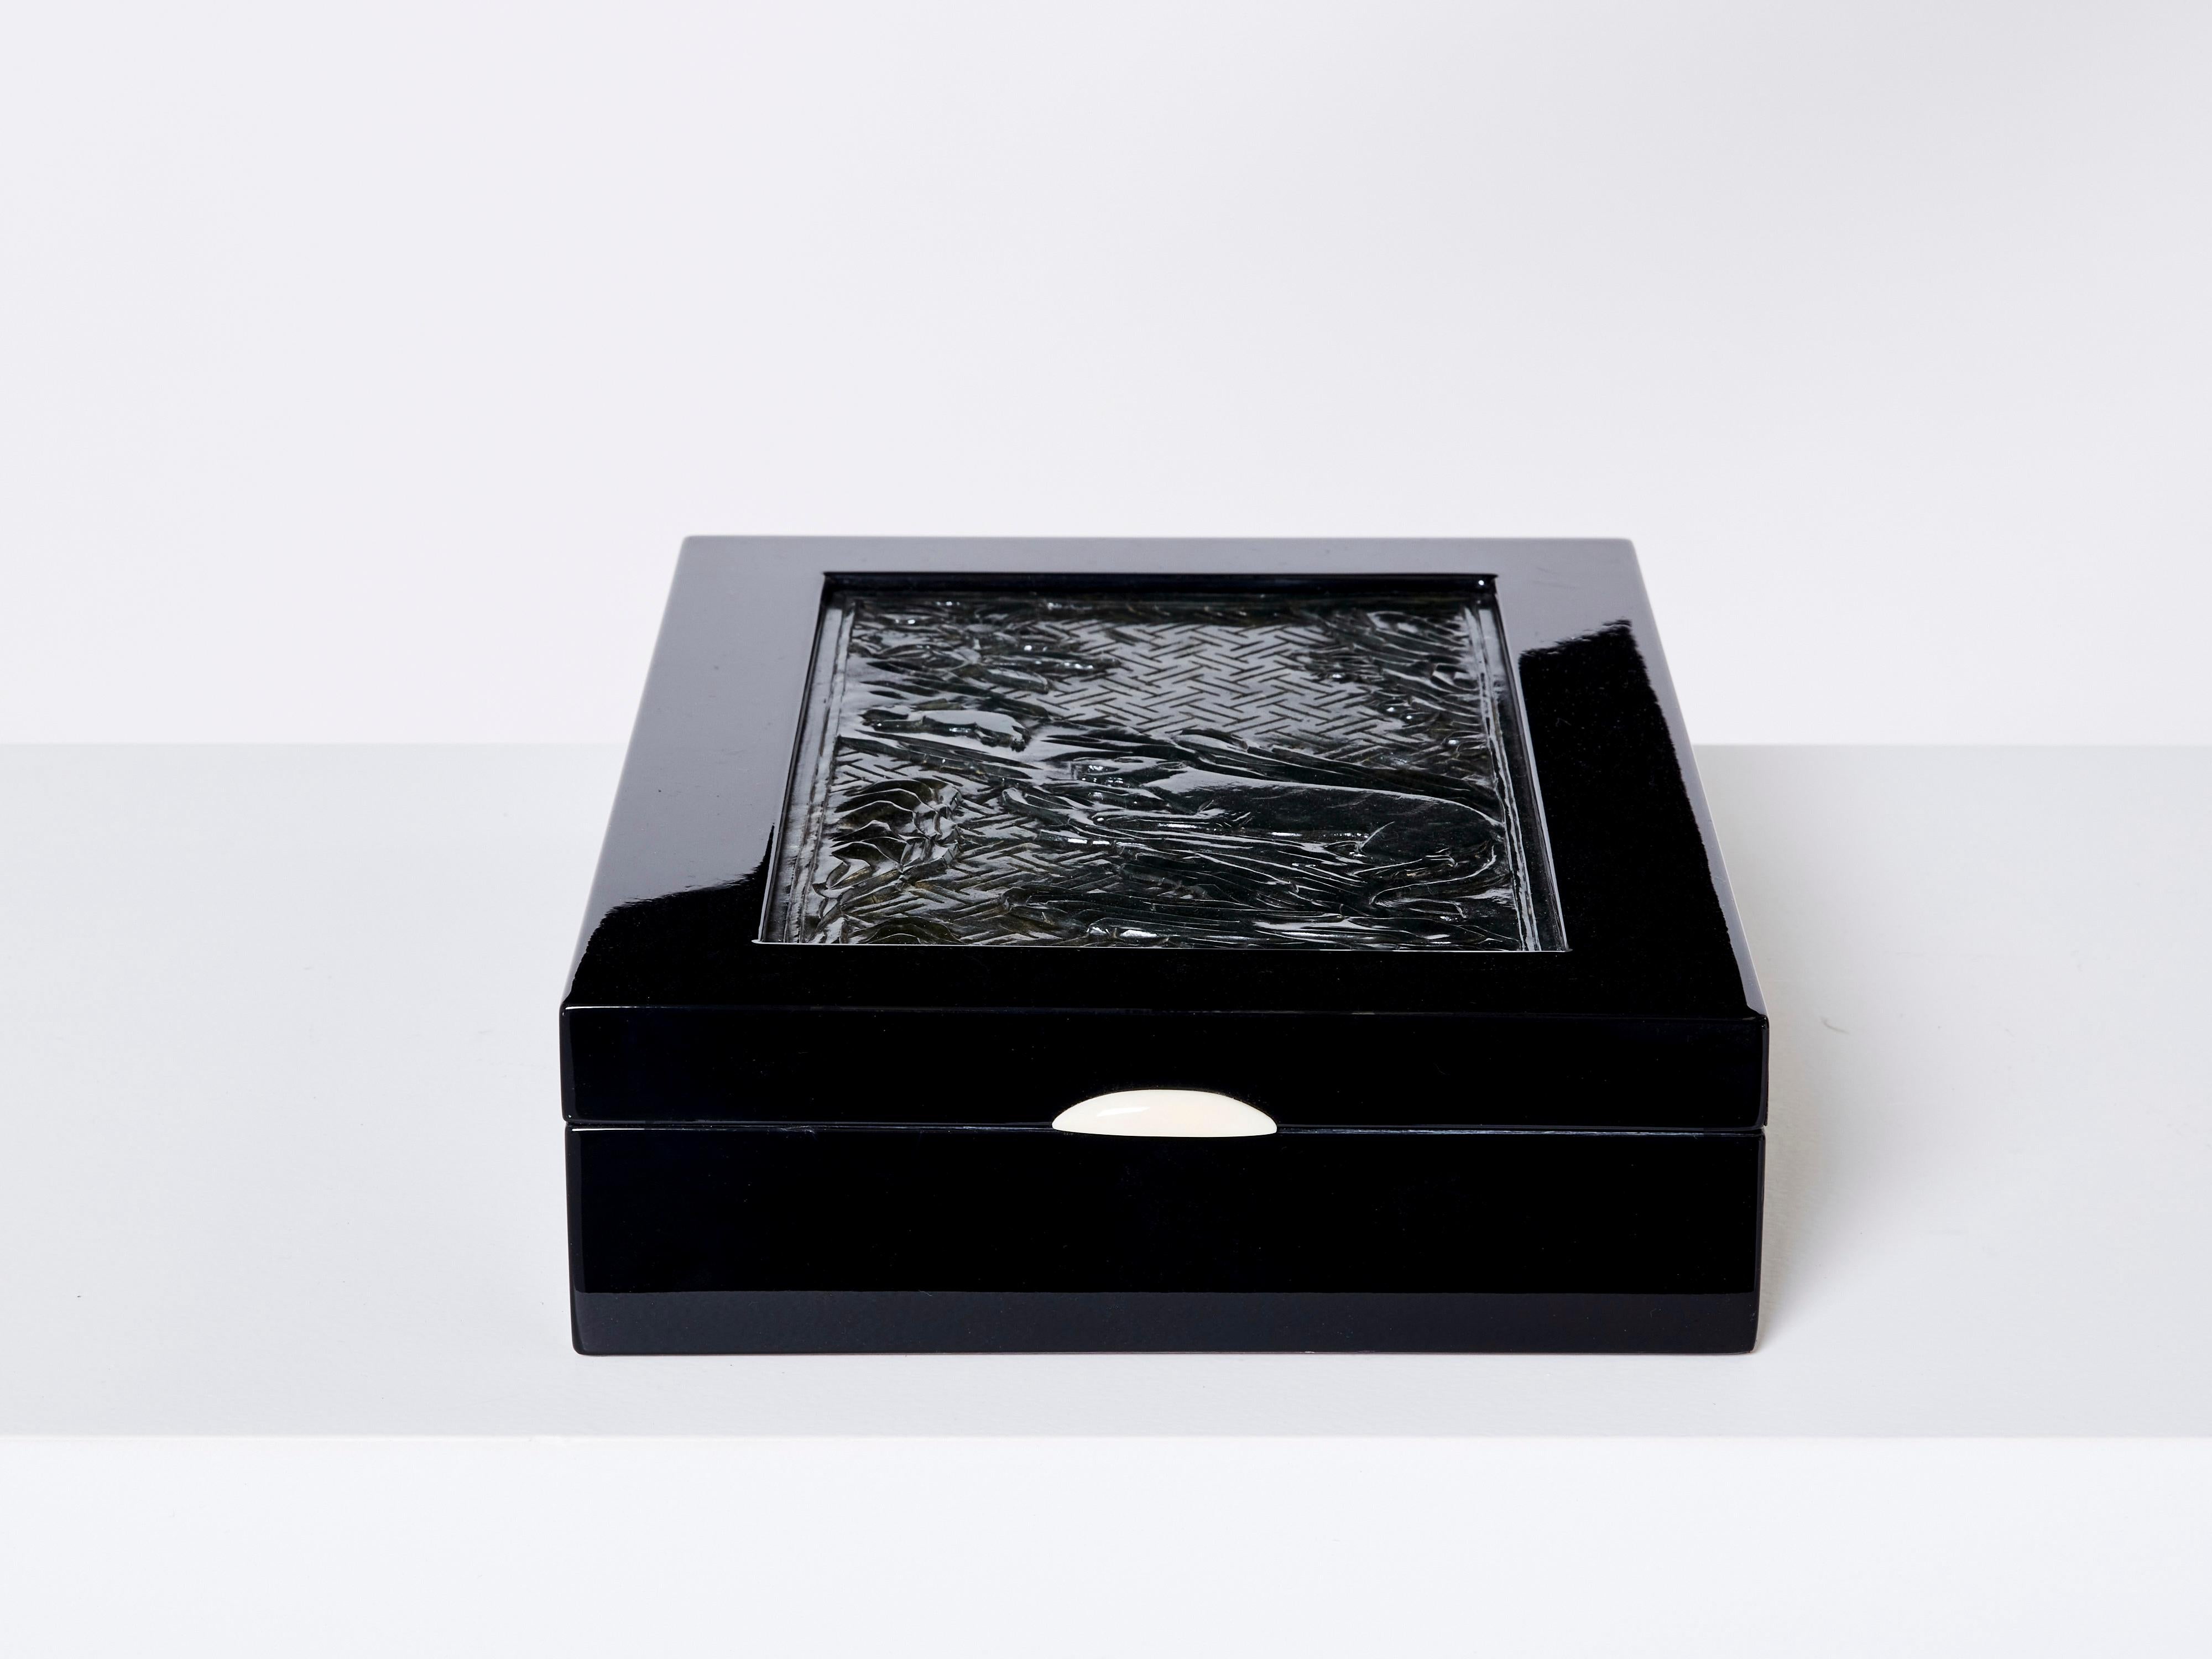 Boîte à bijoux Art déco française unique des années 1930. Cette boîte en bois laqué noir présente sur son couvercle une pierre de jade vert foncé magnifiquement sculptée, représentant une scène avec une panthère poursuivant un lapin. Il a été